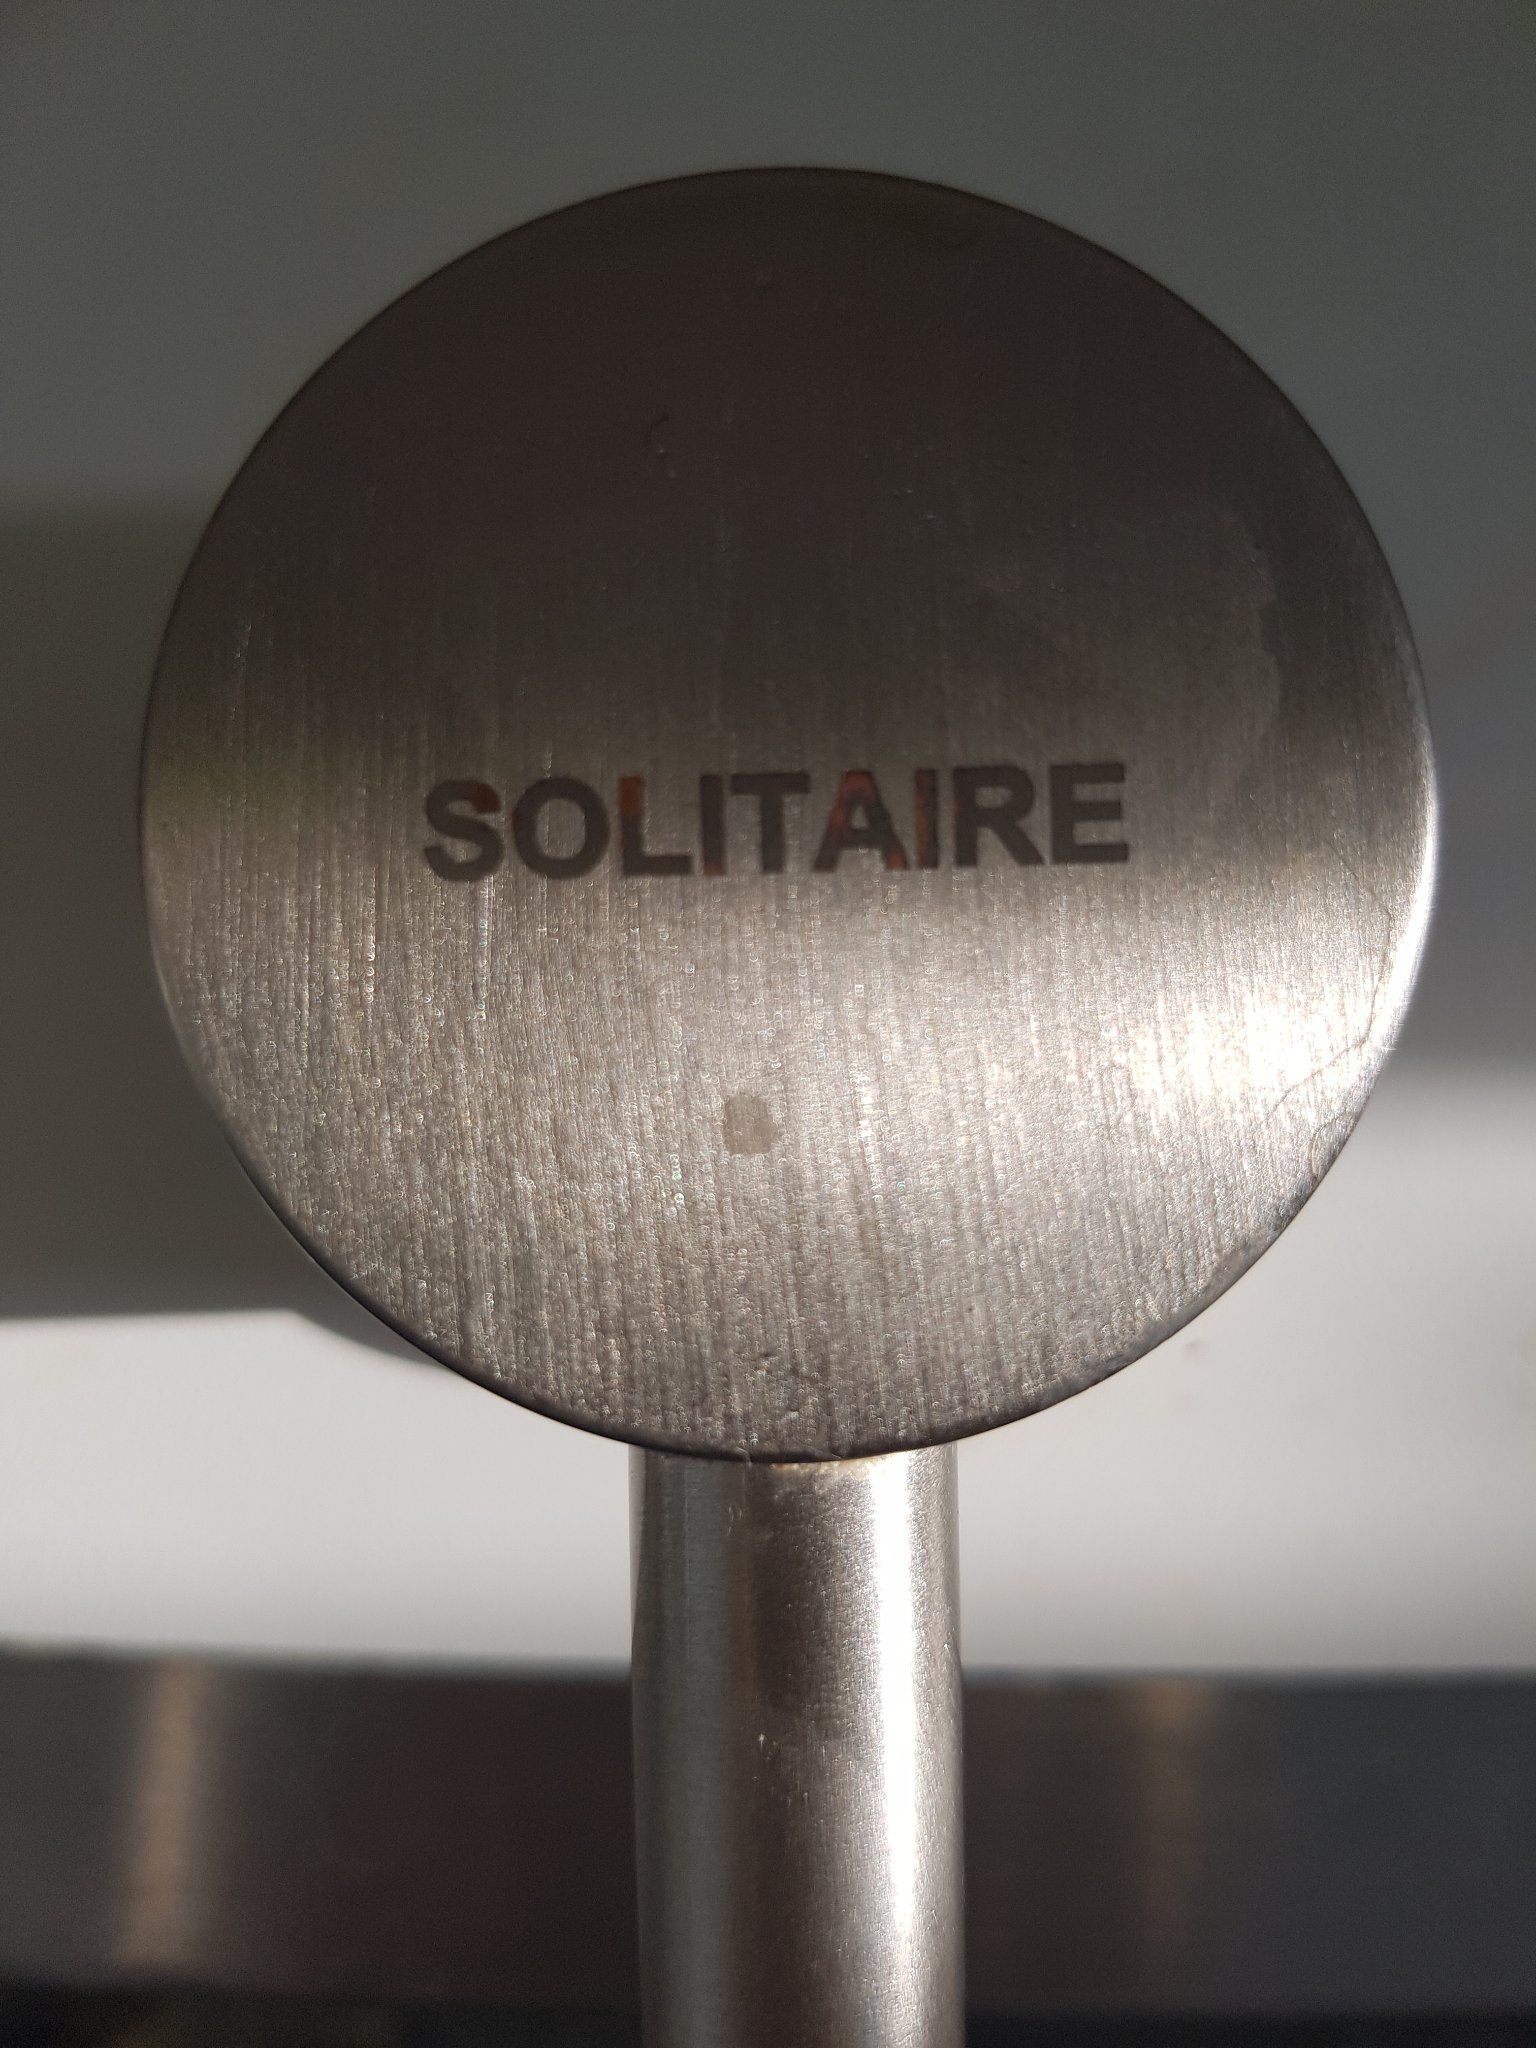 Berri mogelijkheid Justitie Solitaire (Bosch) Keukenkraan repareren - Werkspot